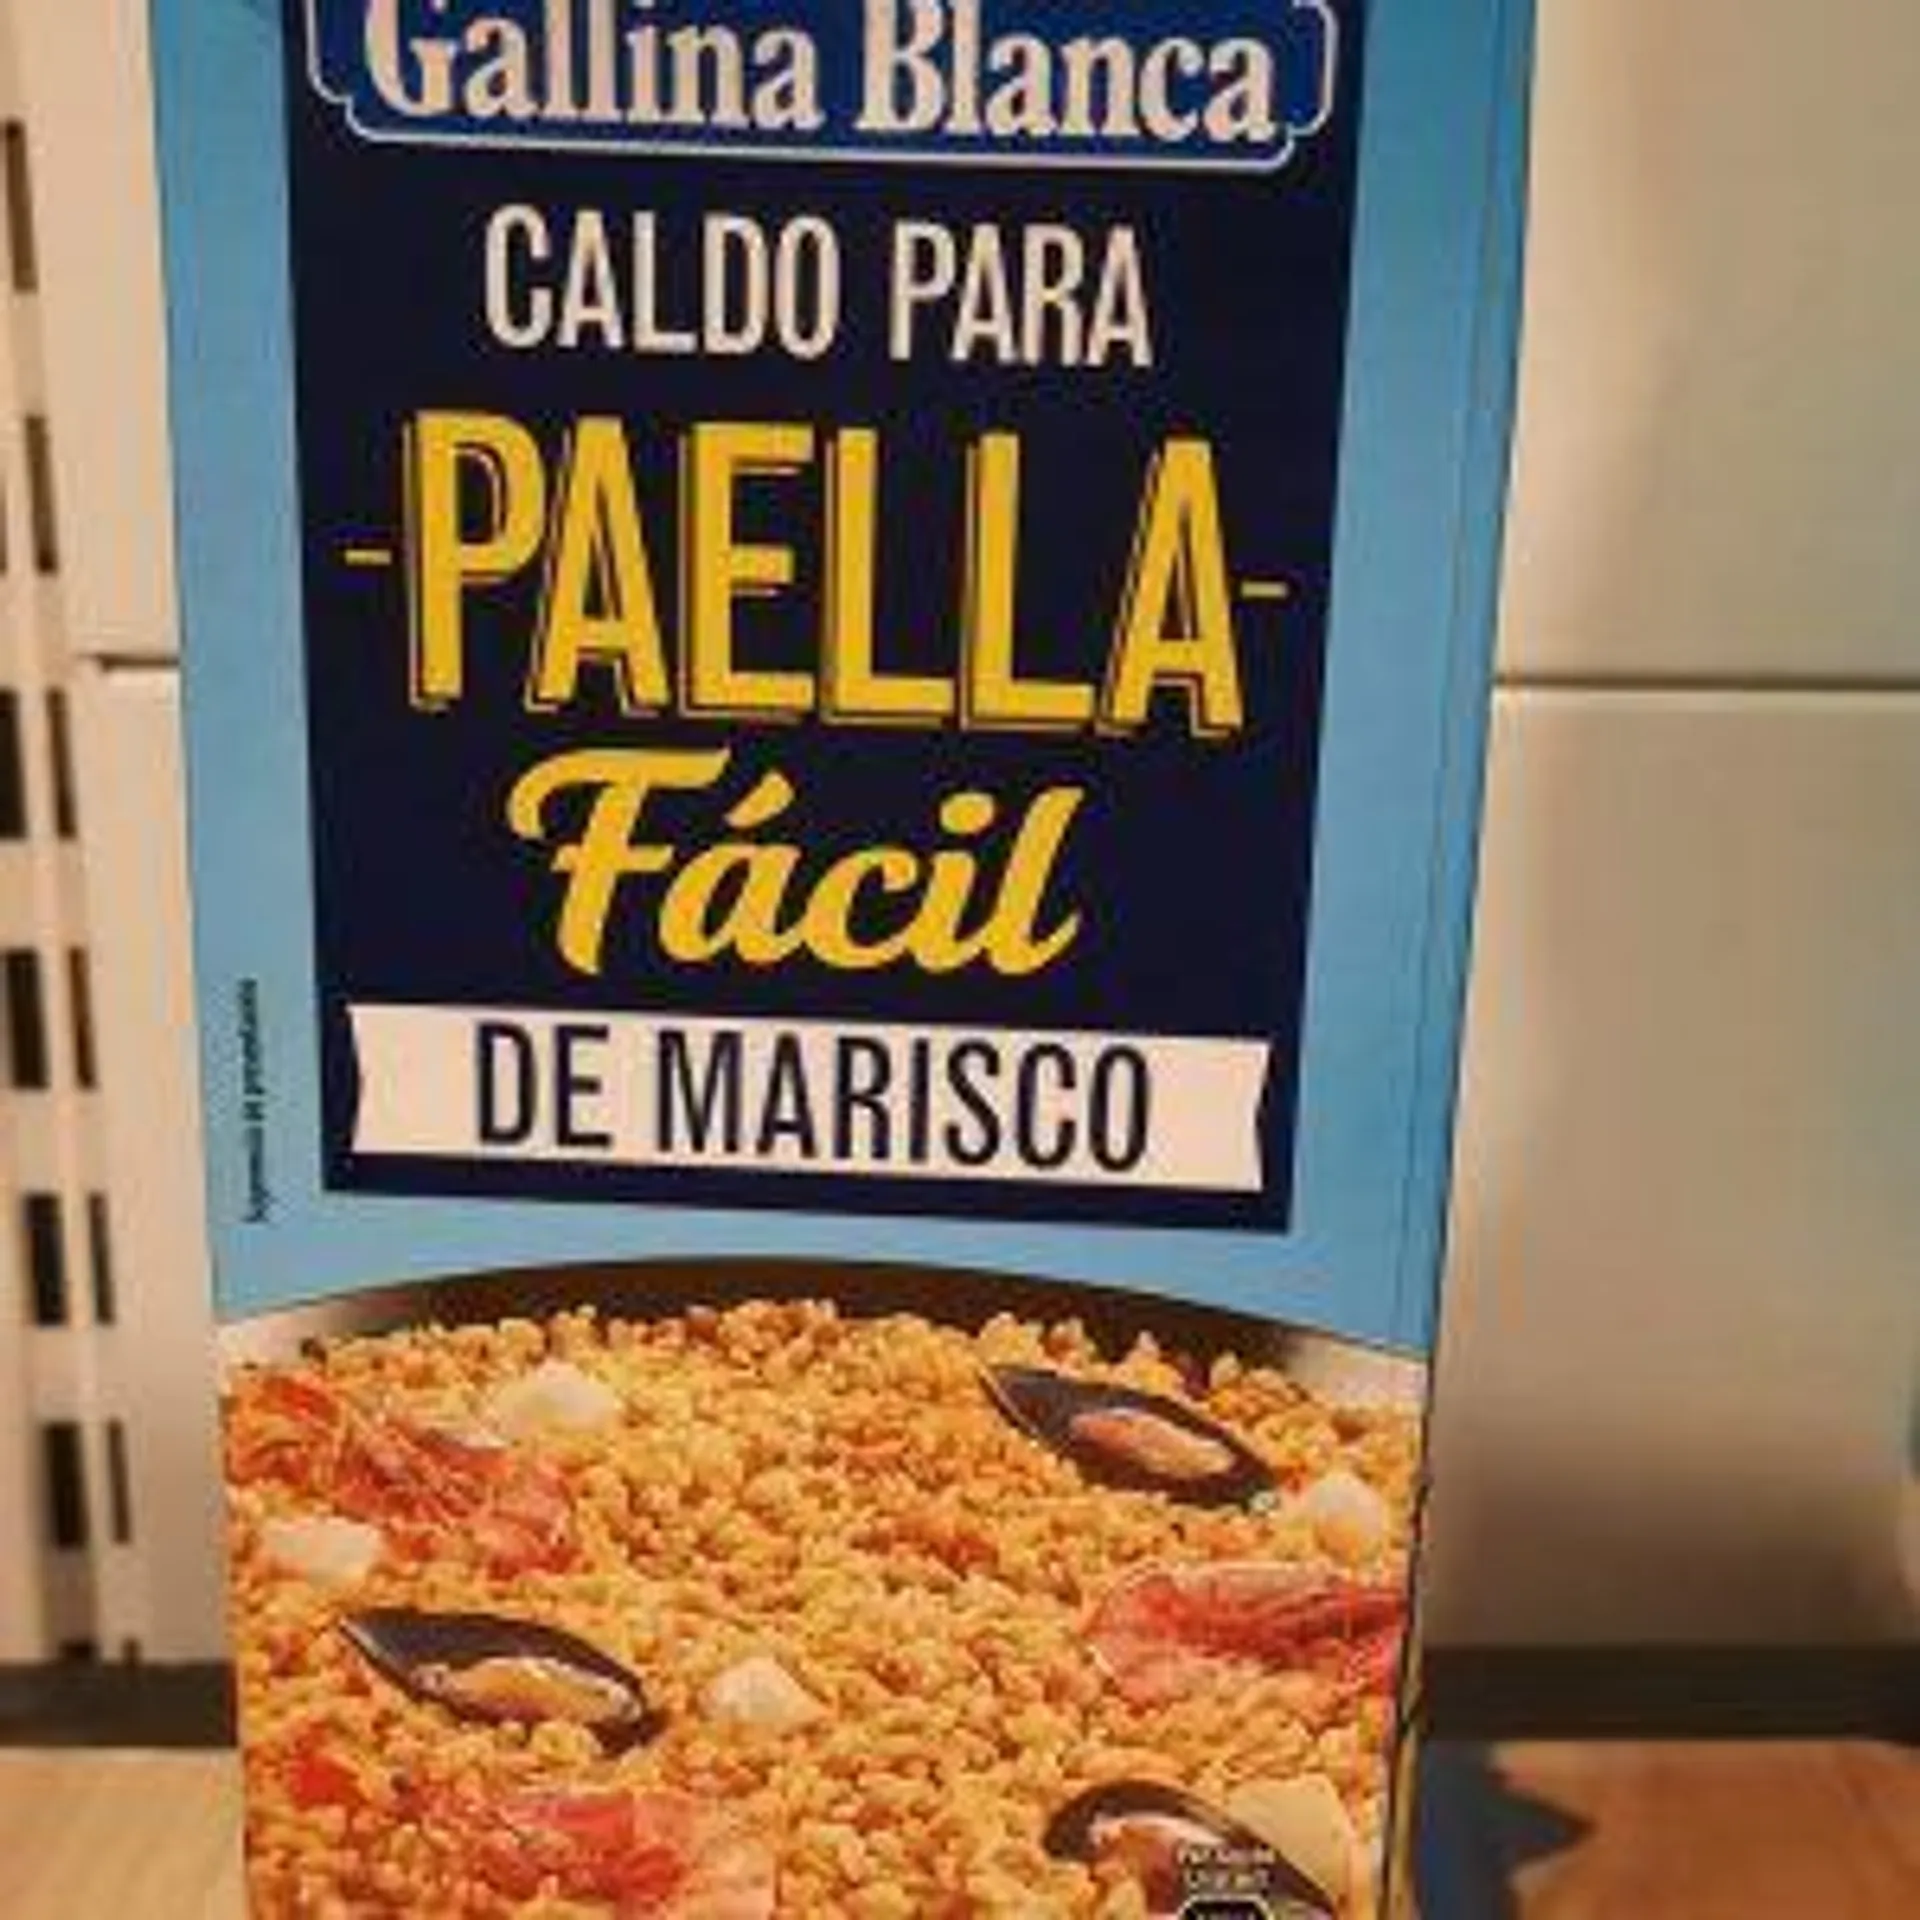 PAELLA FÁCIL DE MARISCO GALLINA BLANCA